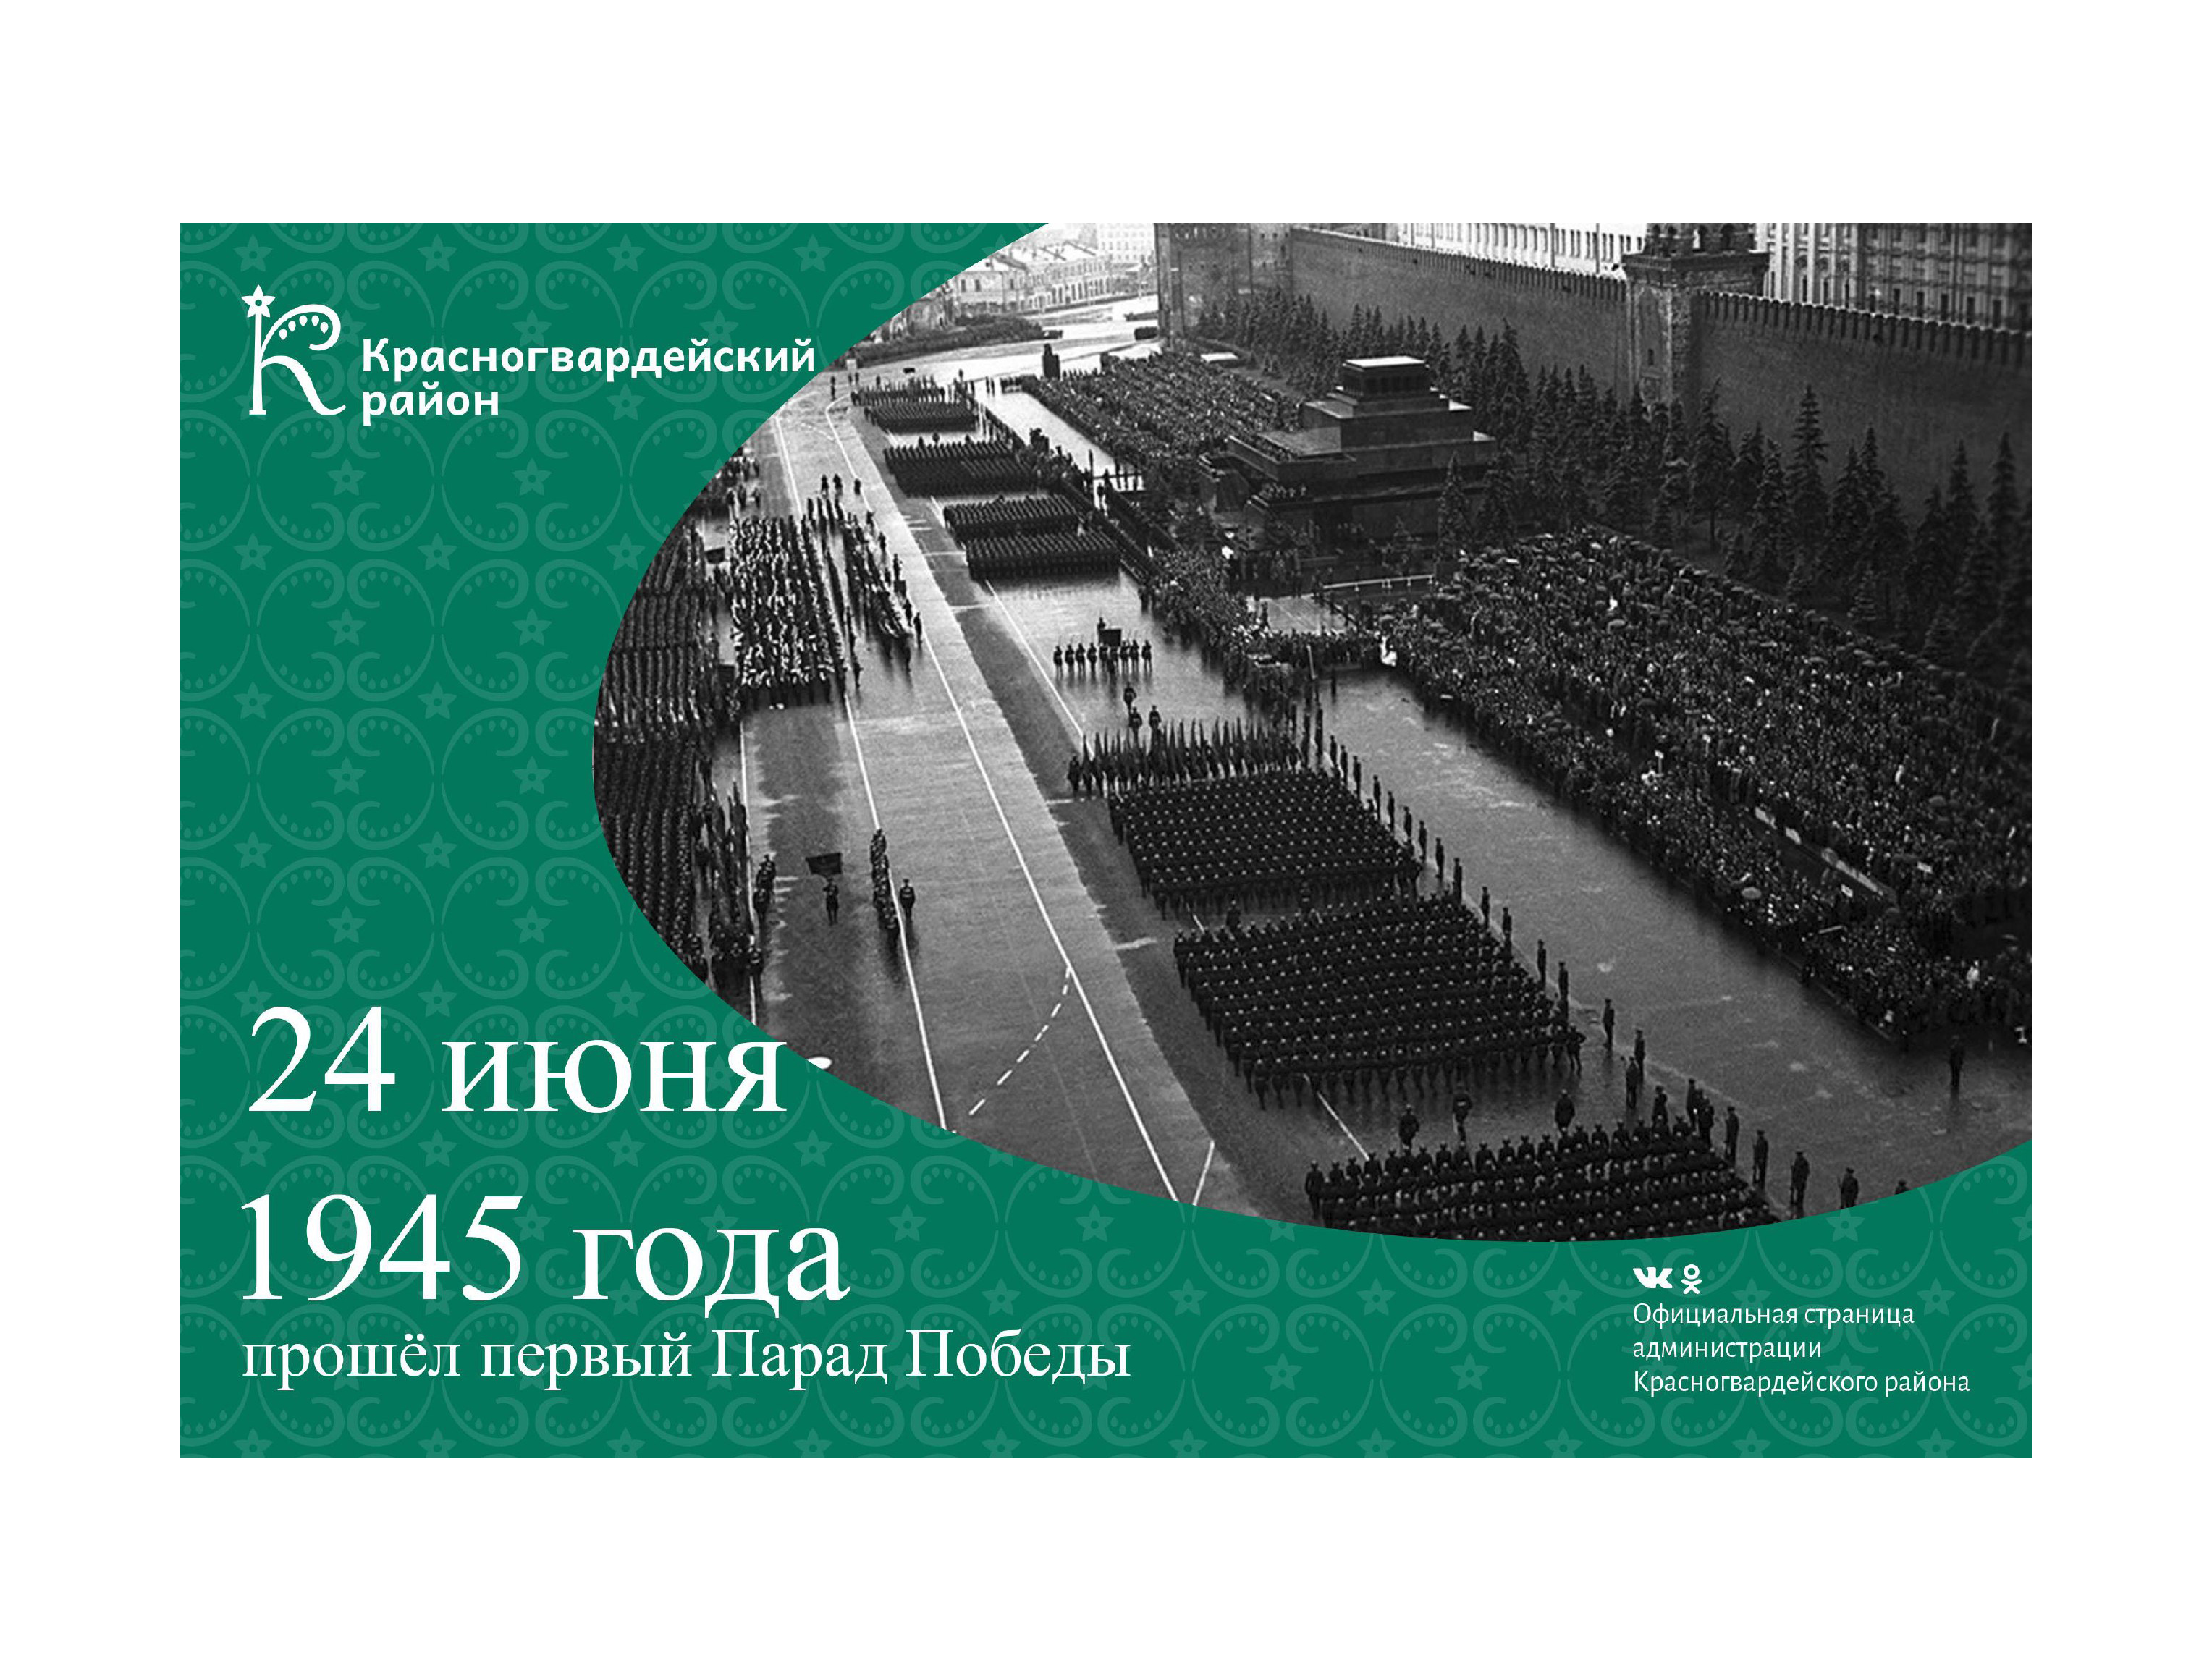 #аВыЗнали, 24 июня 1945 года в Москве на Красной площади прошёл первый Парад Победы в честь победы СССР над Германией в Великой Отечественной войне?.